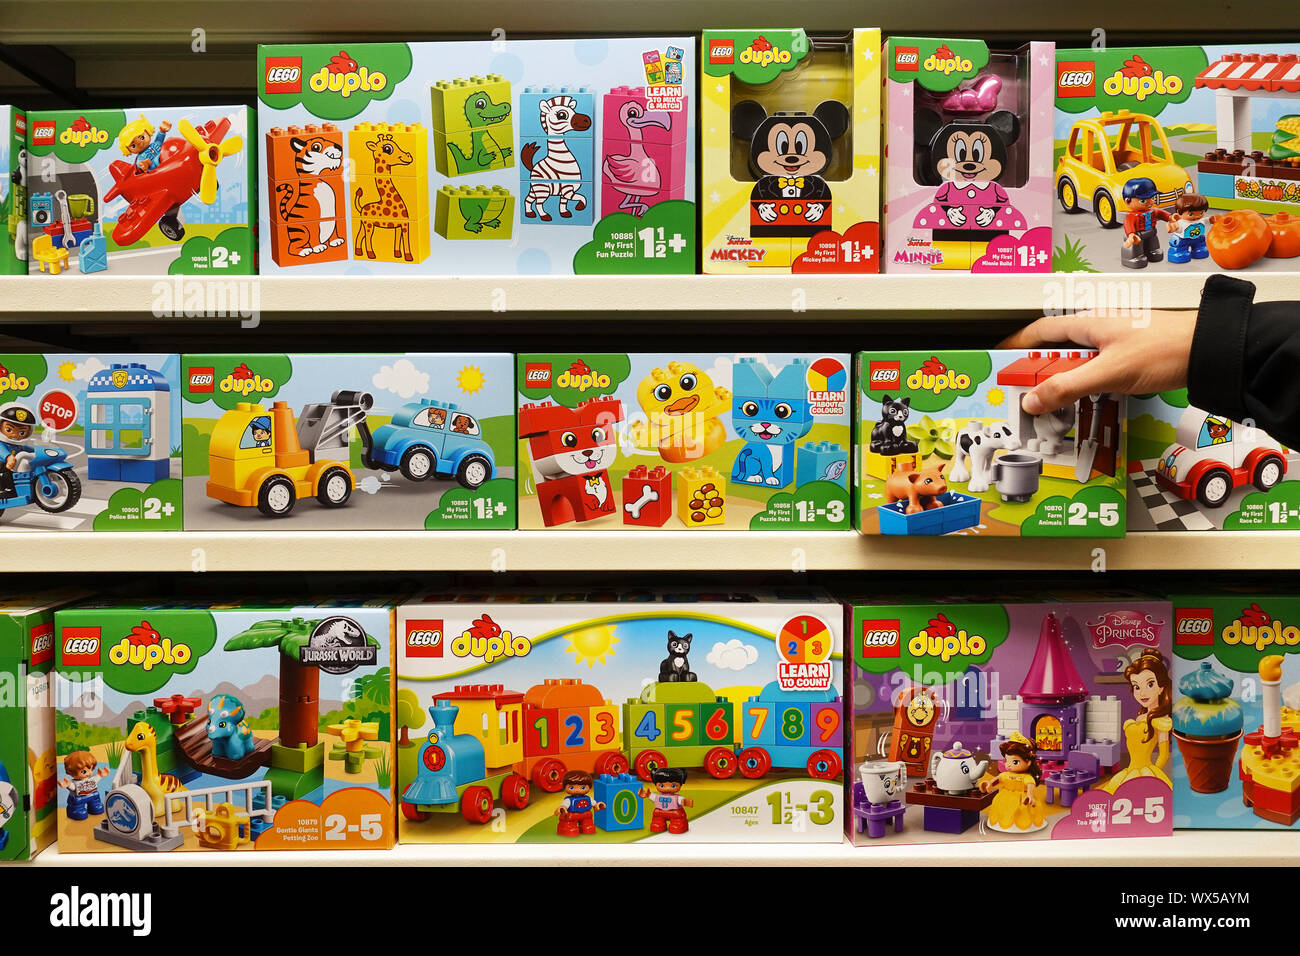 Les boîtes de Lego Duplo dans un magasin de jouets Photo Stock - Alamy